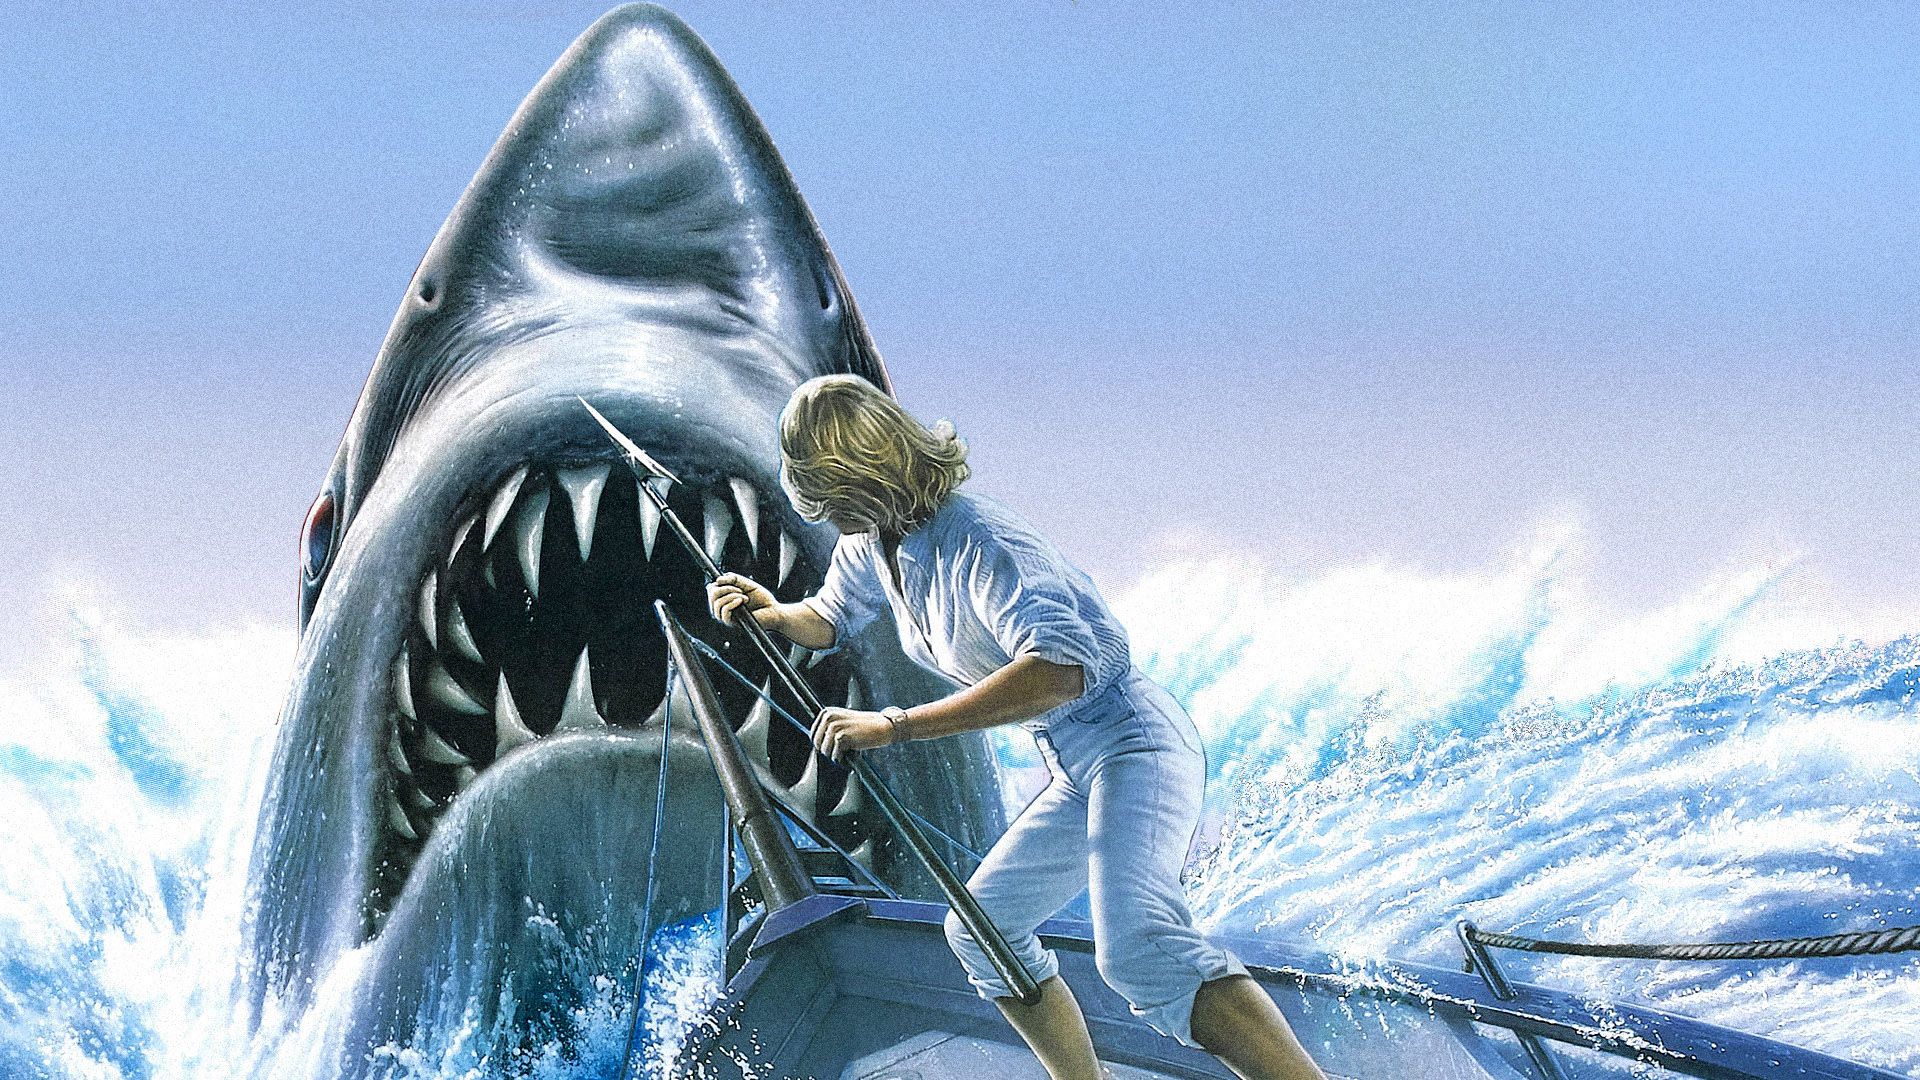 Jaws: The Revenge background